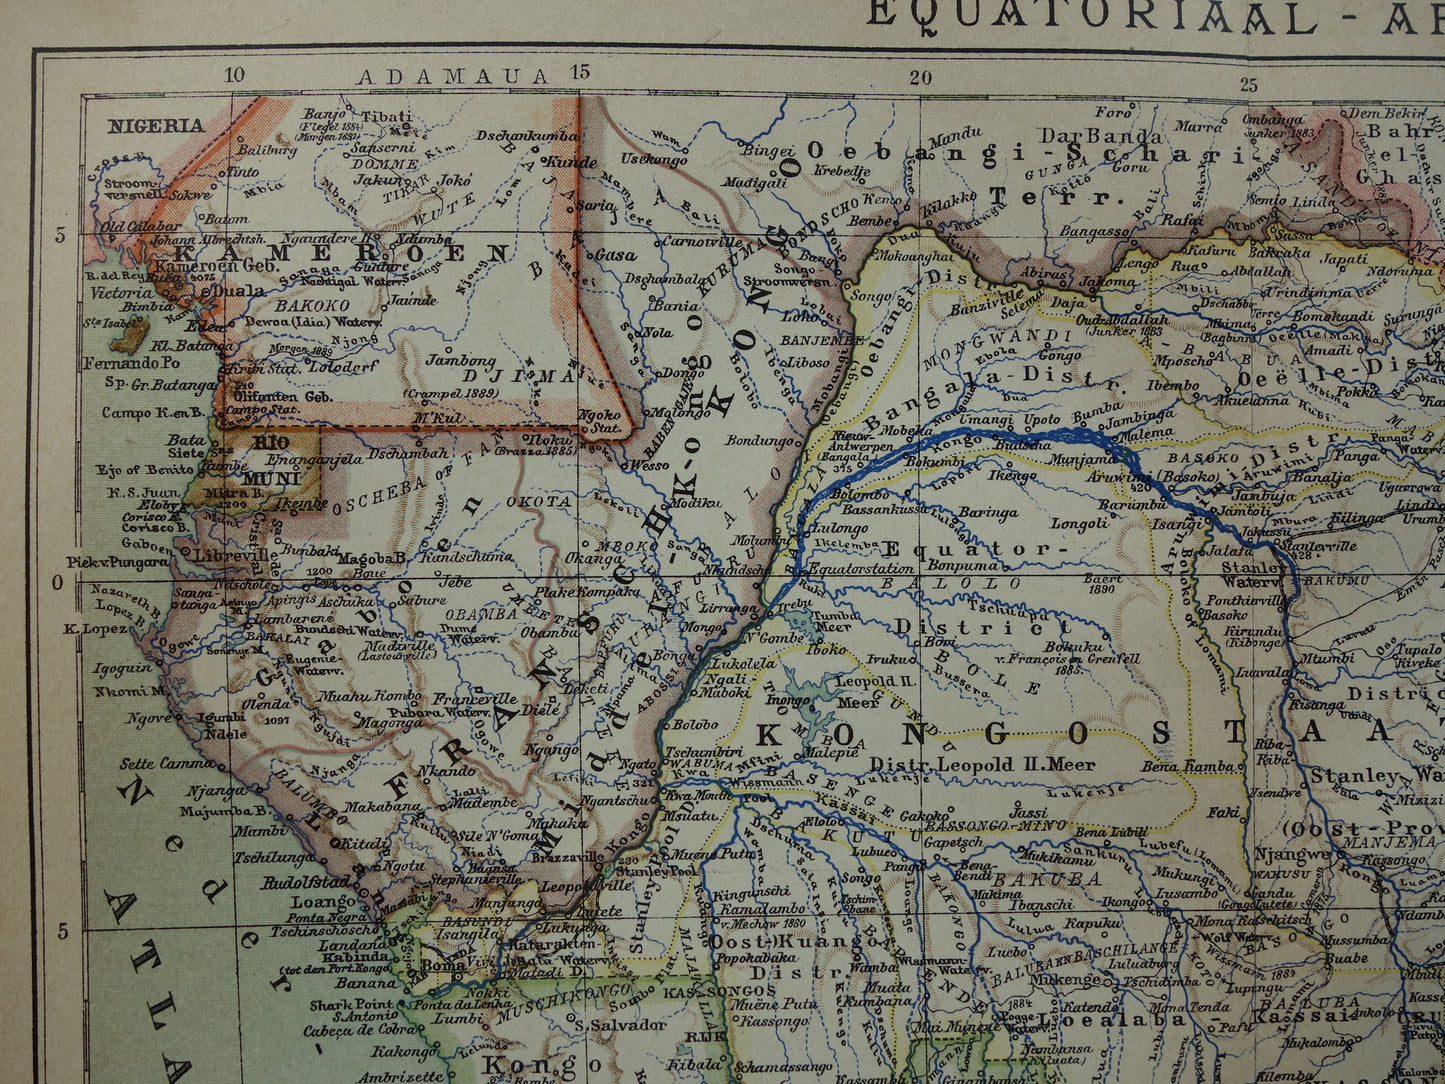 Oude kaart van Centraal Afrika uit 1905 originele landkaart van Midden-Afrika Kongo Angola Tanzania historische vintage print